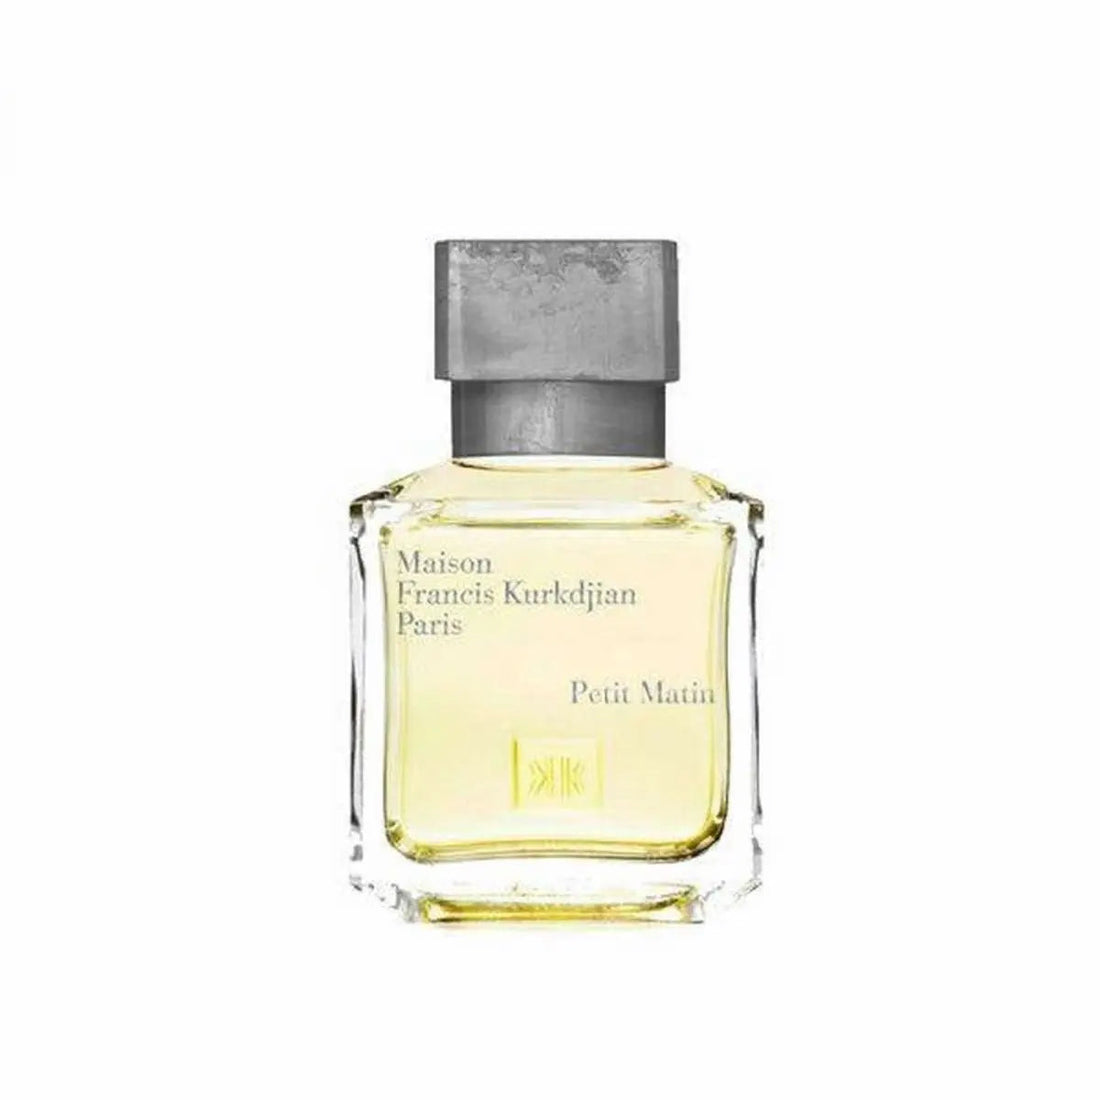 Maison francis kurkdjian Francis Kurkdjian Petit Matin Eau de Parfum - 200 ml